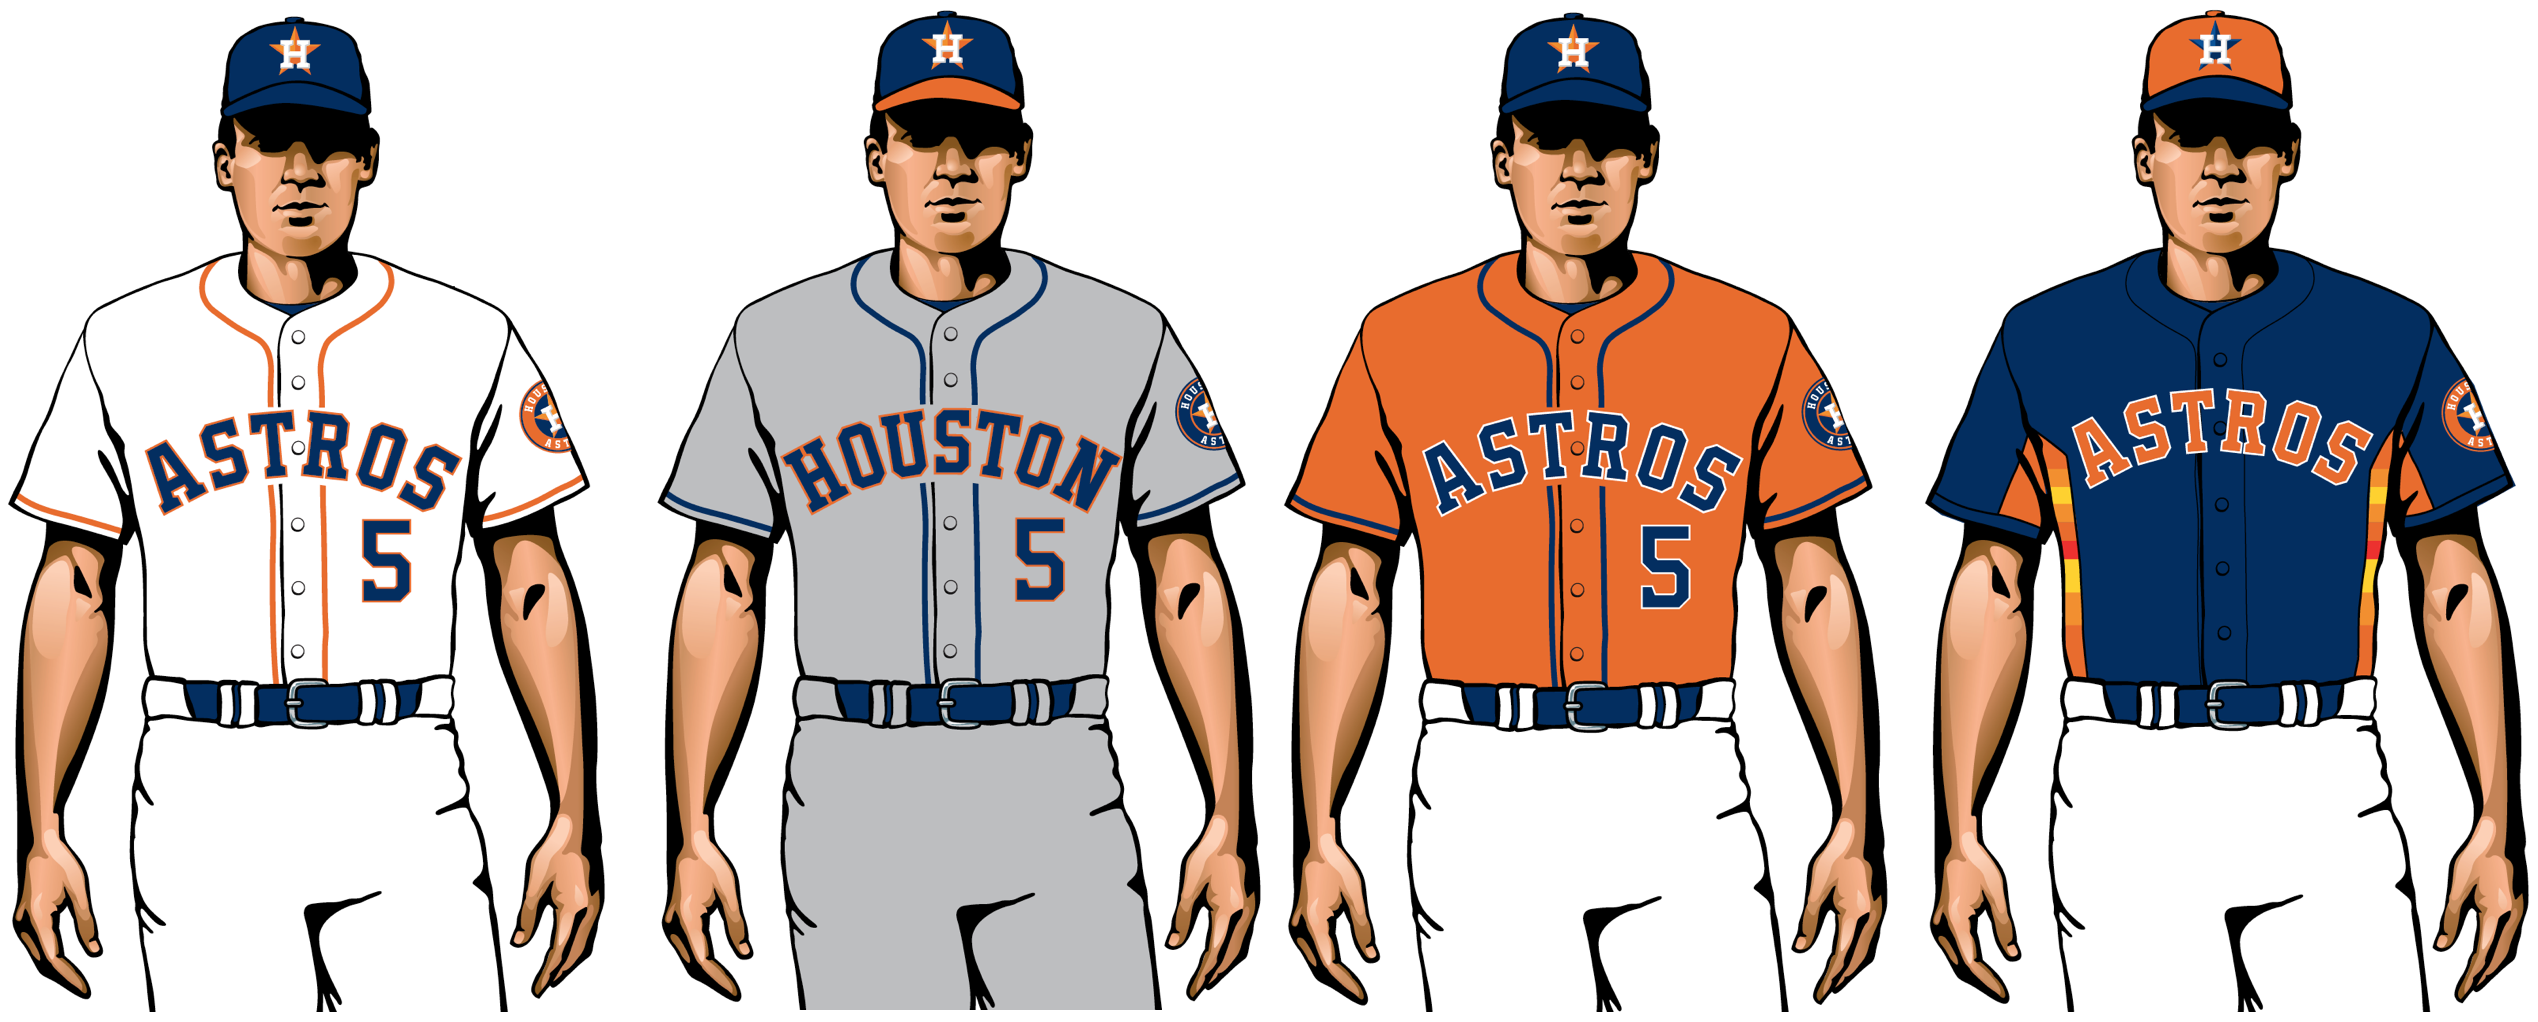 astros uniforms 2020